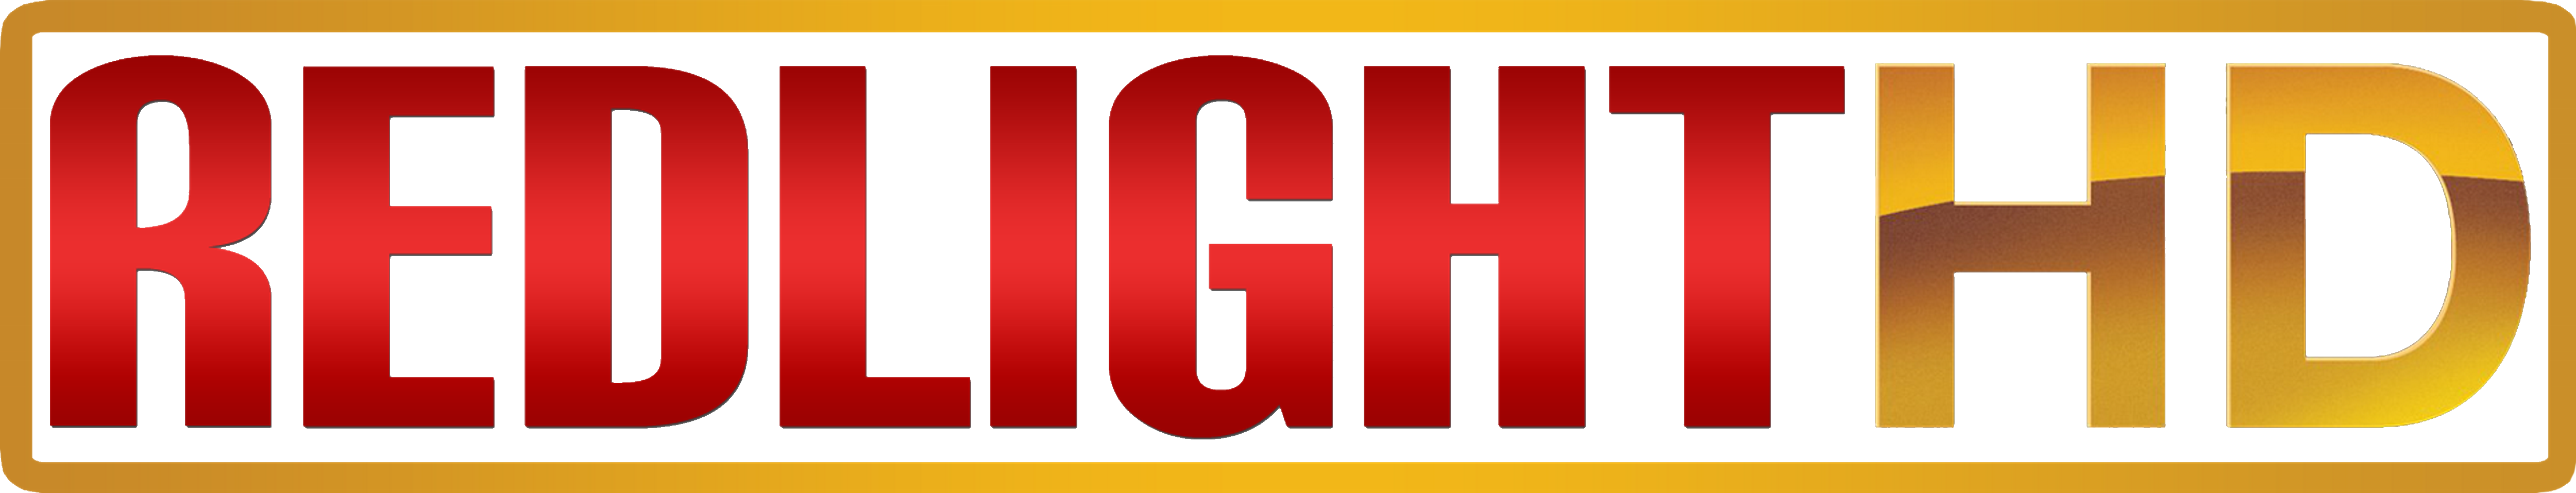 Redlight HD, Mihsign Vision